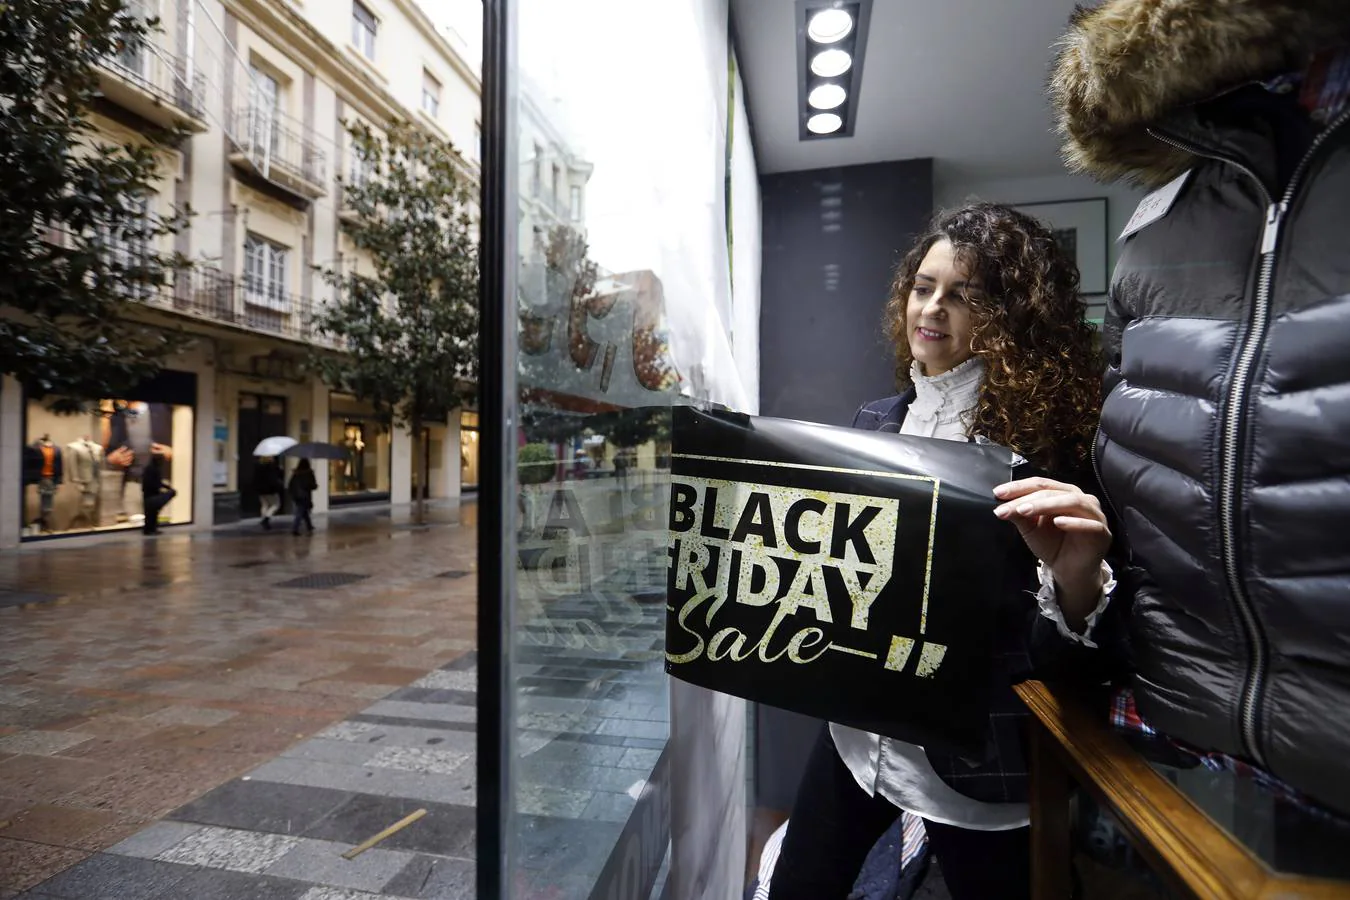 En imágenes, los preparativos en Córdoba para el «Black Friday»